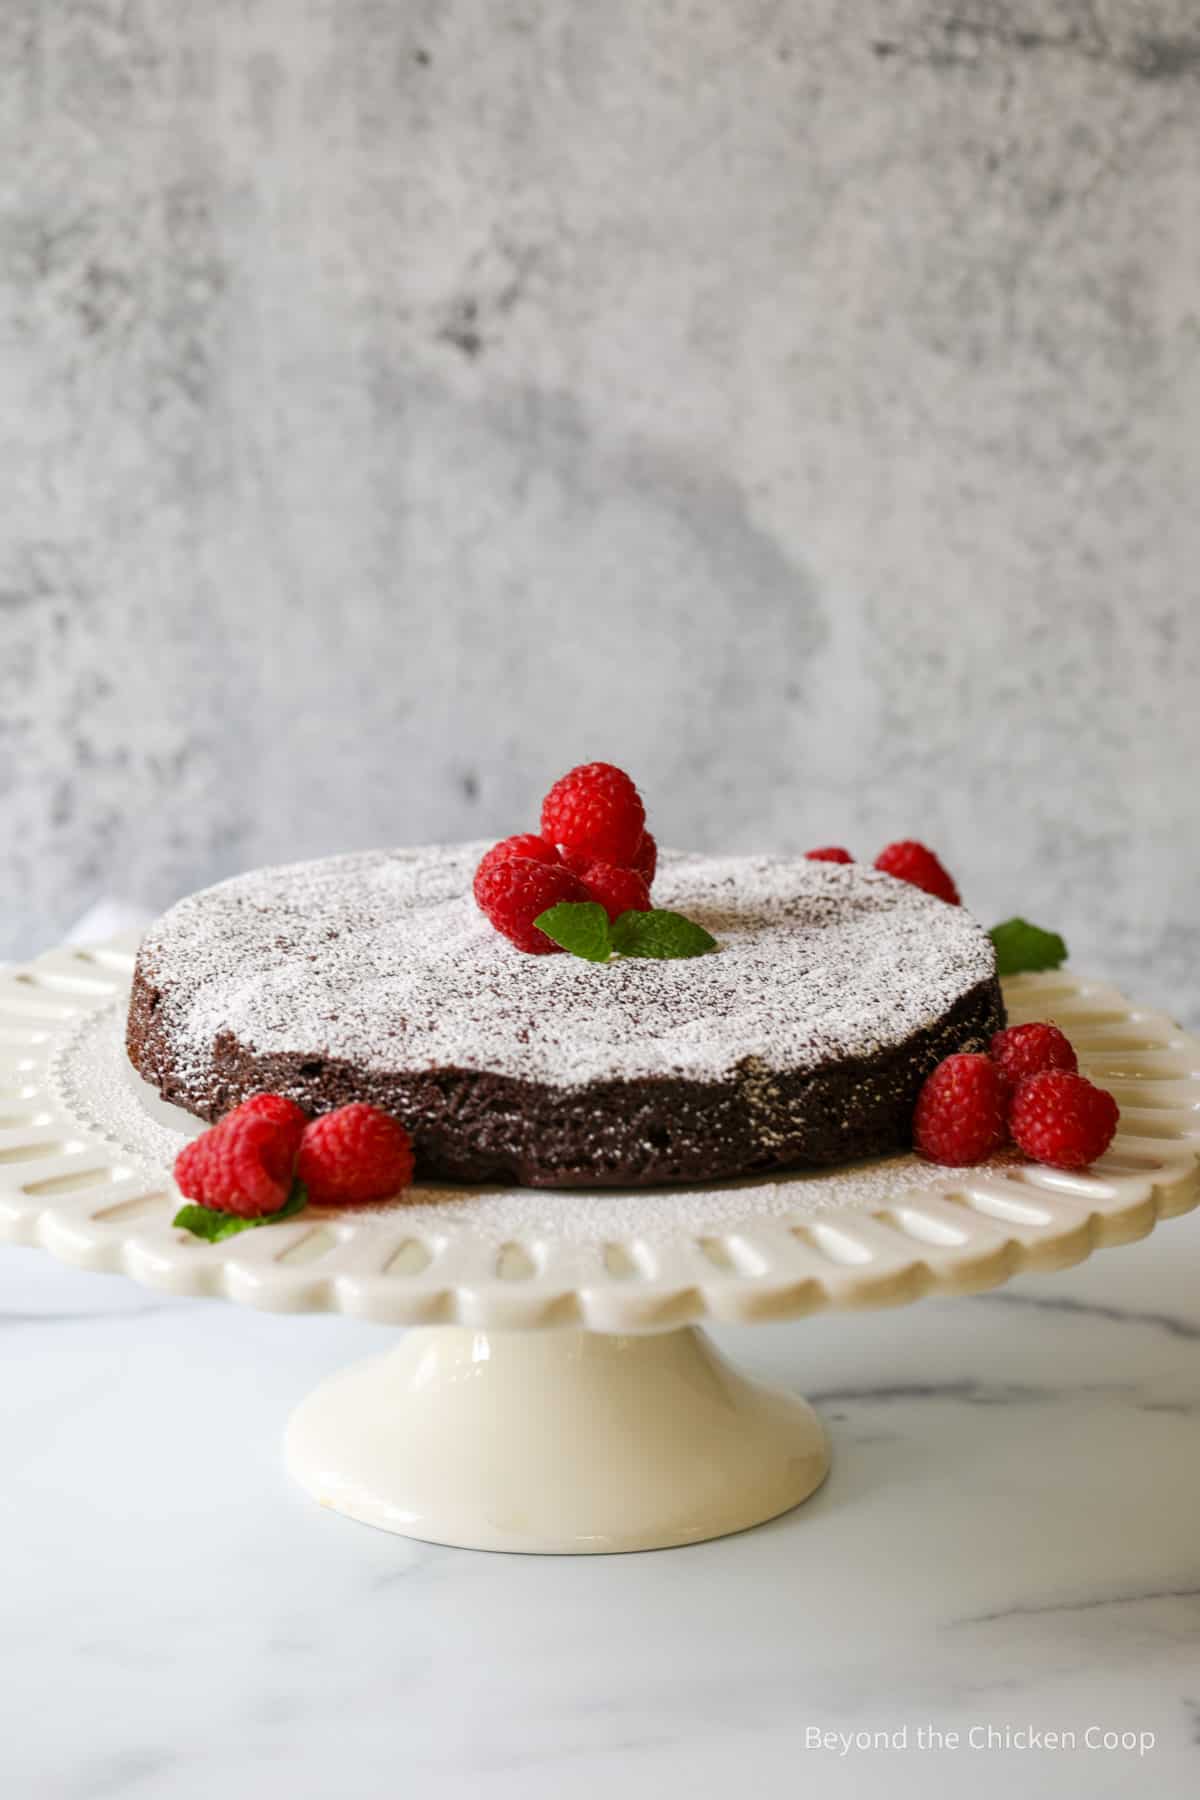 A flourless chocolate cake on a cake stand.